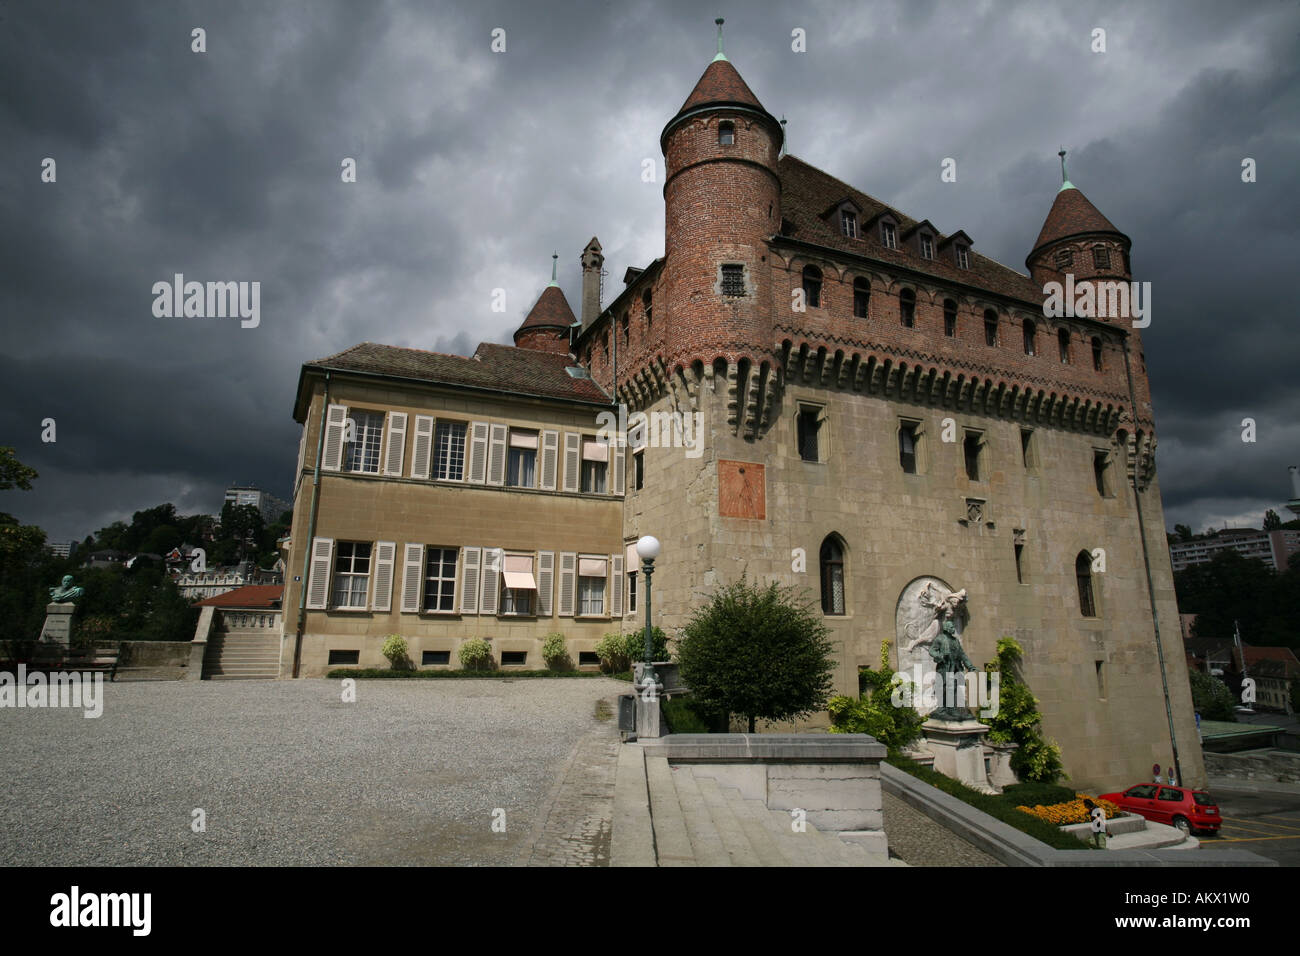 Incalza temporale e nuvole nere dietro il castello Saint-Maire nei vecchi borghi di Losanna e di Vaud, Svizzera Foto Stock